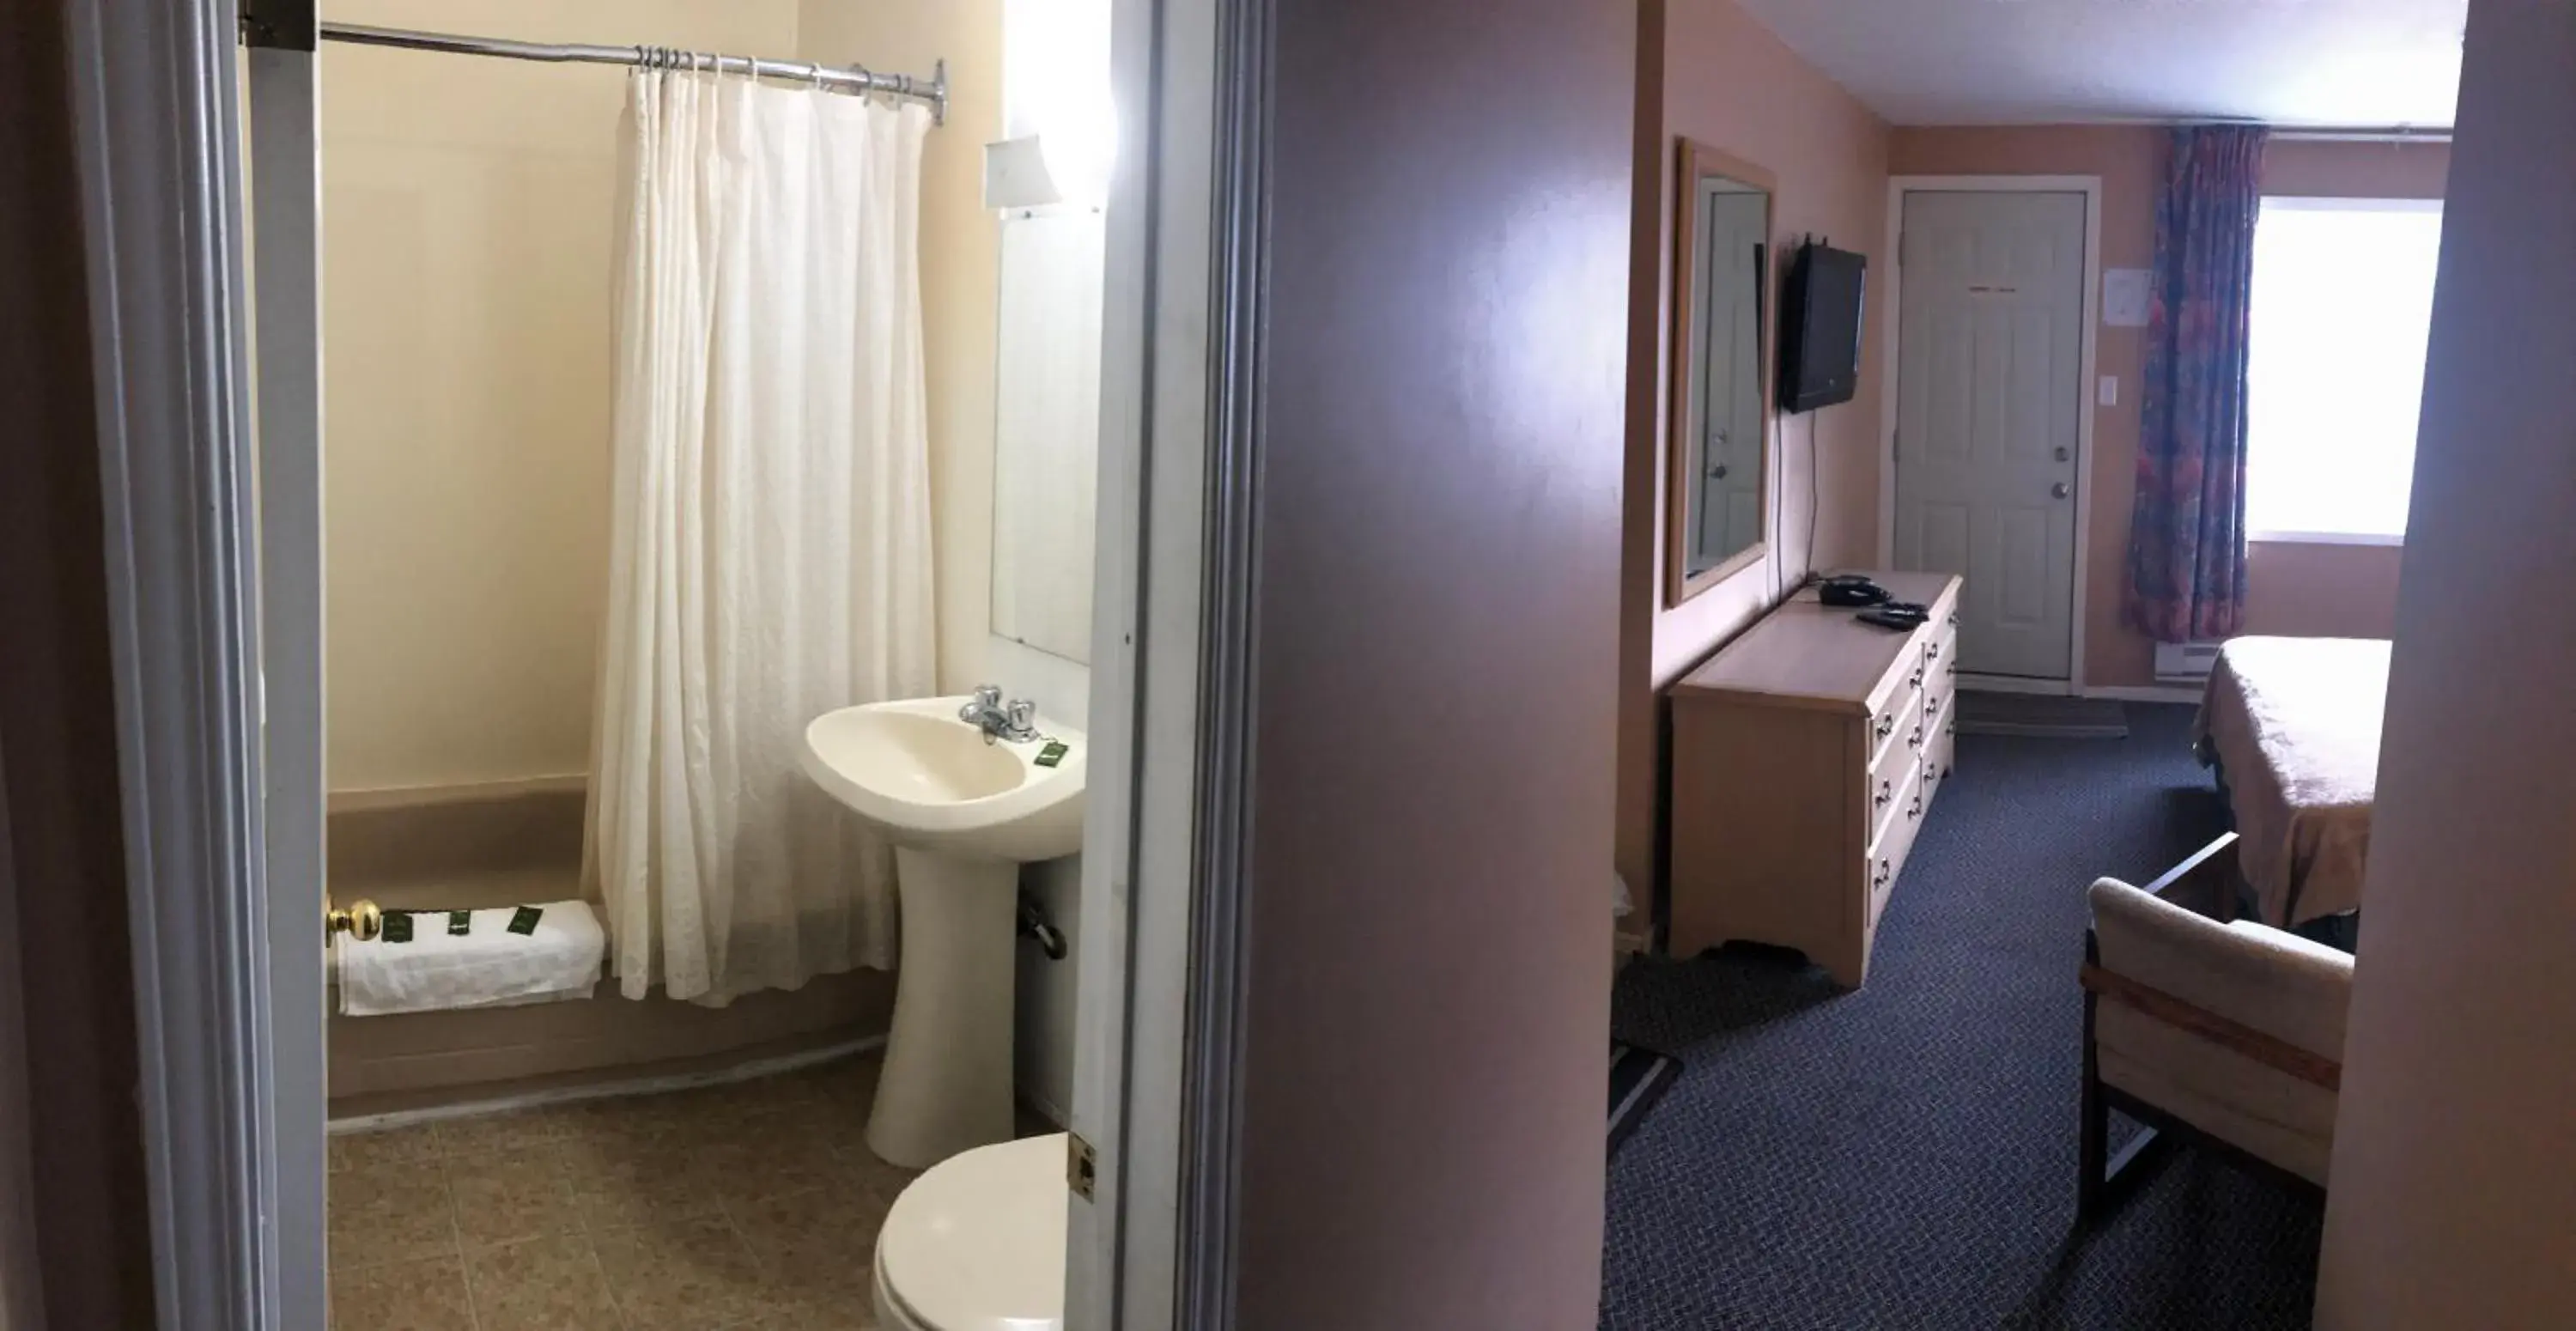 Bathroom in Guest Inn Motel